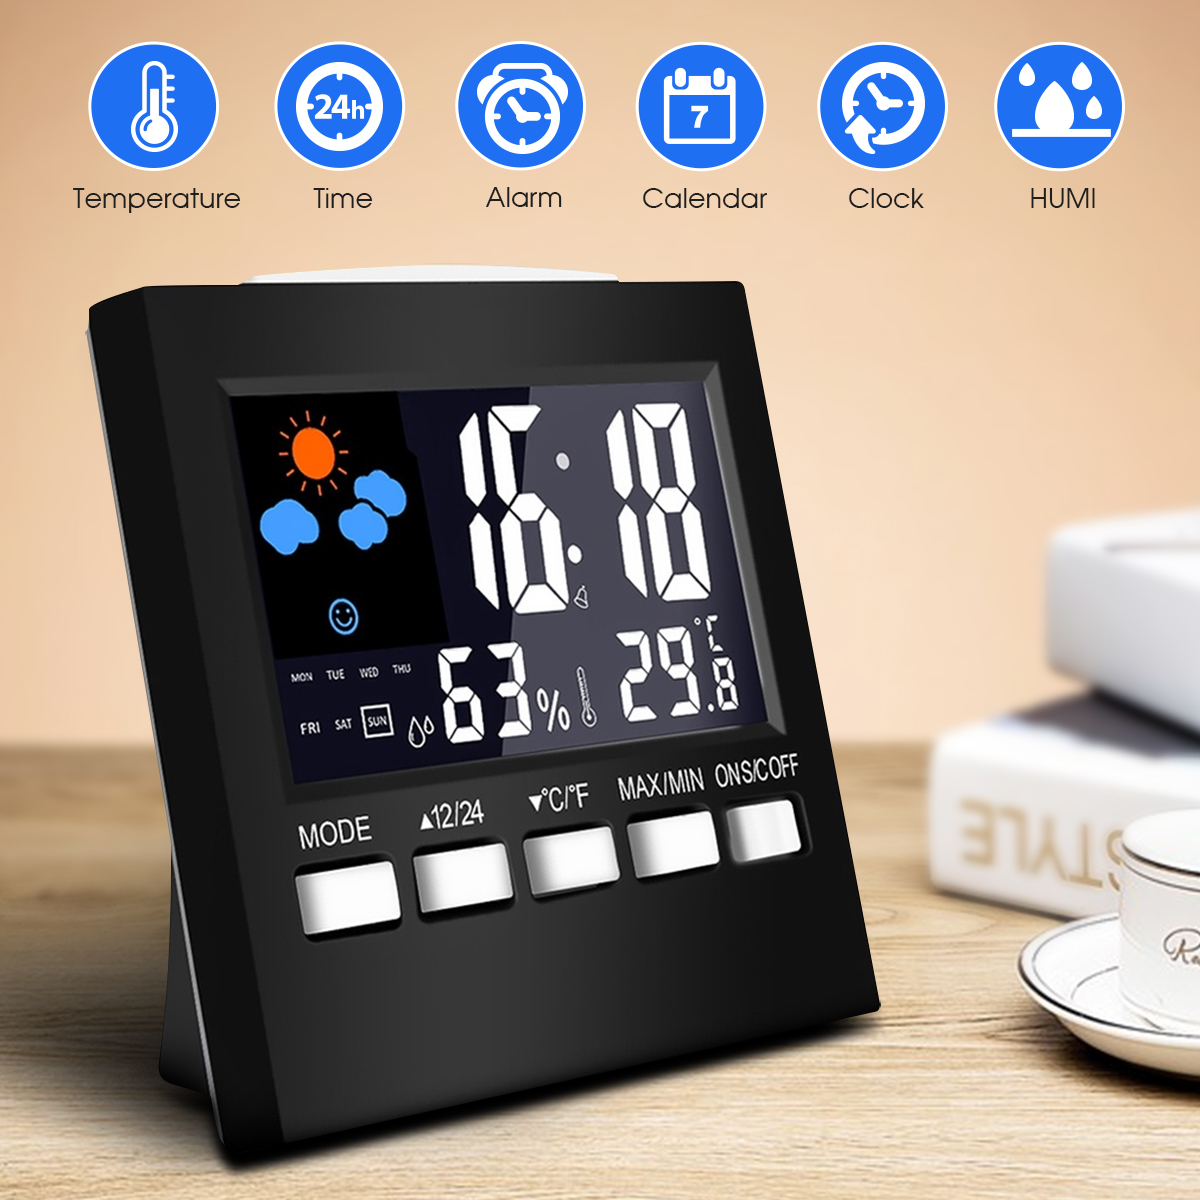 universal House Digital LCD Alarm Calendar Temperature Humidity Meter Hygrometer